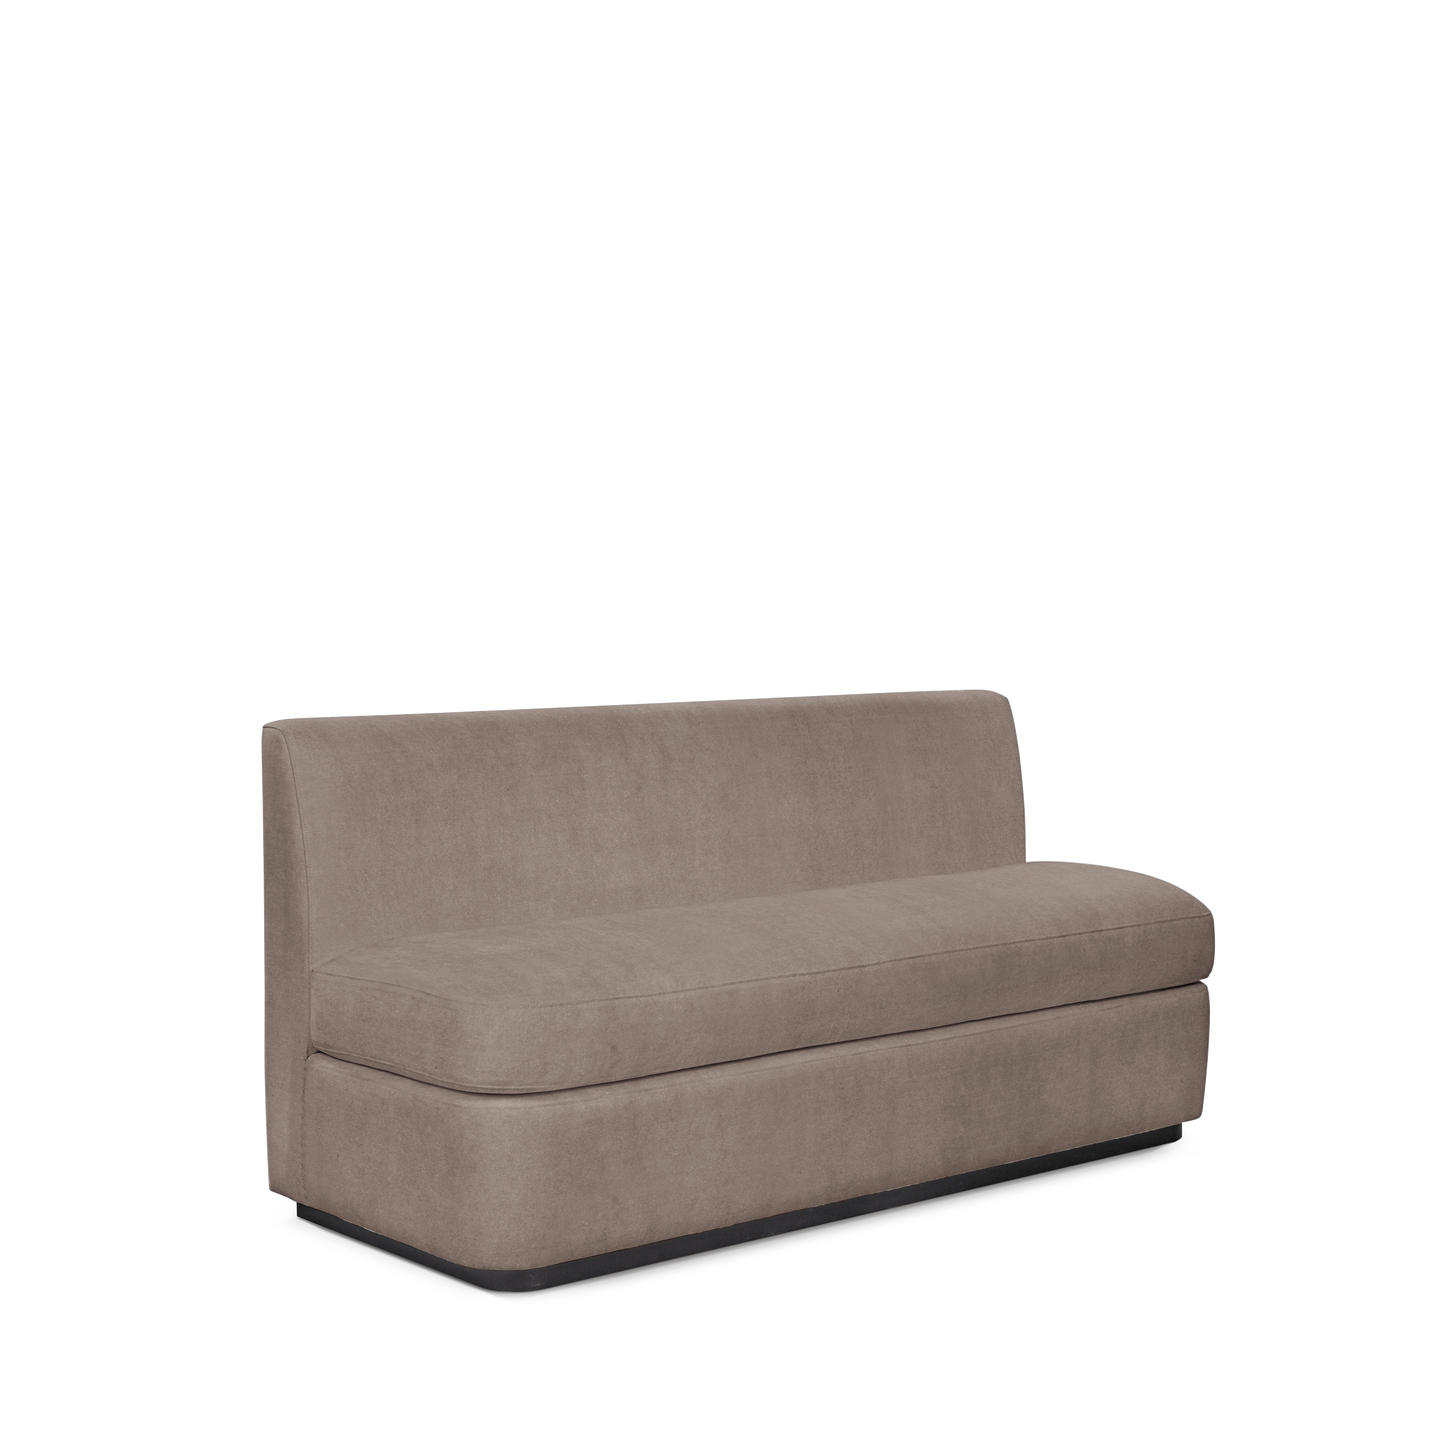  CALMA KITCHEN 3-seater sofa with London  grey textile 